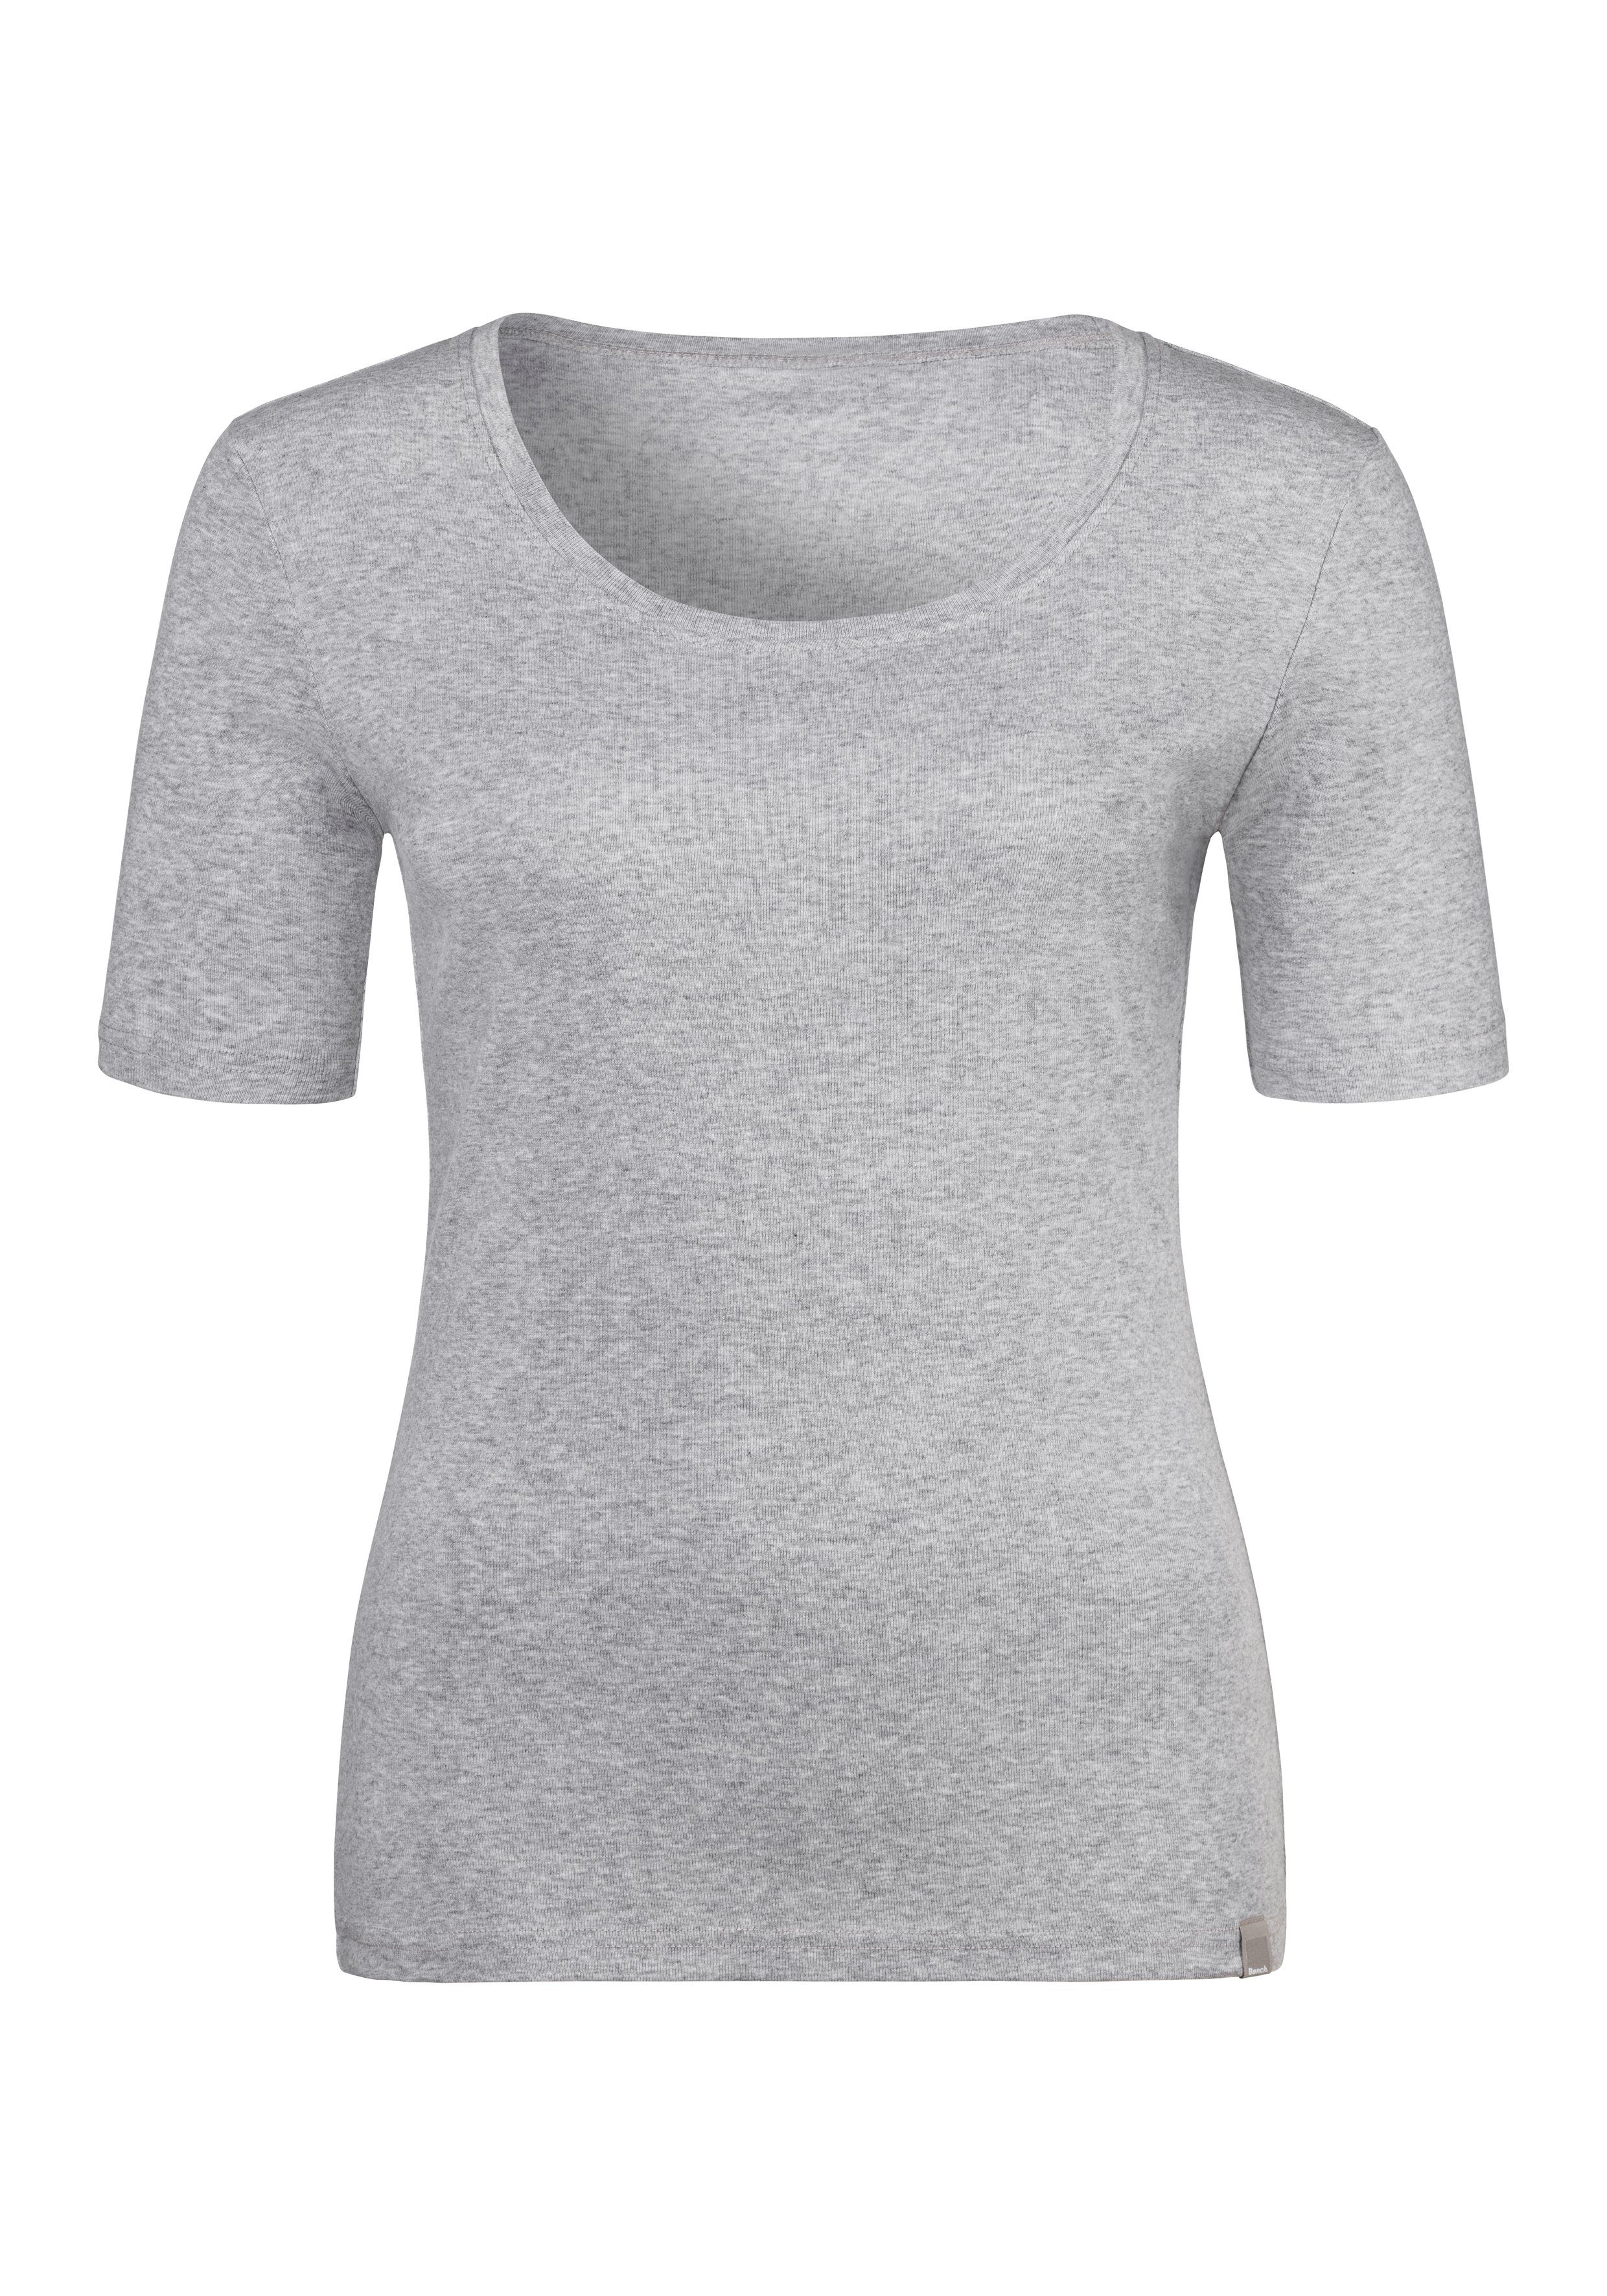 Bench. T-Shirt (2er-Pack) aus Unterziehshirt Feinripp-Qualität, grau-meliert schwarz, weicher